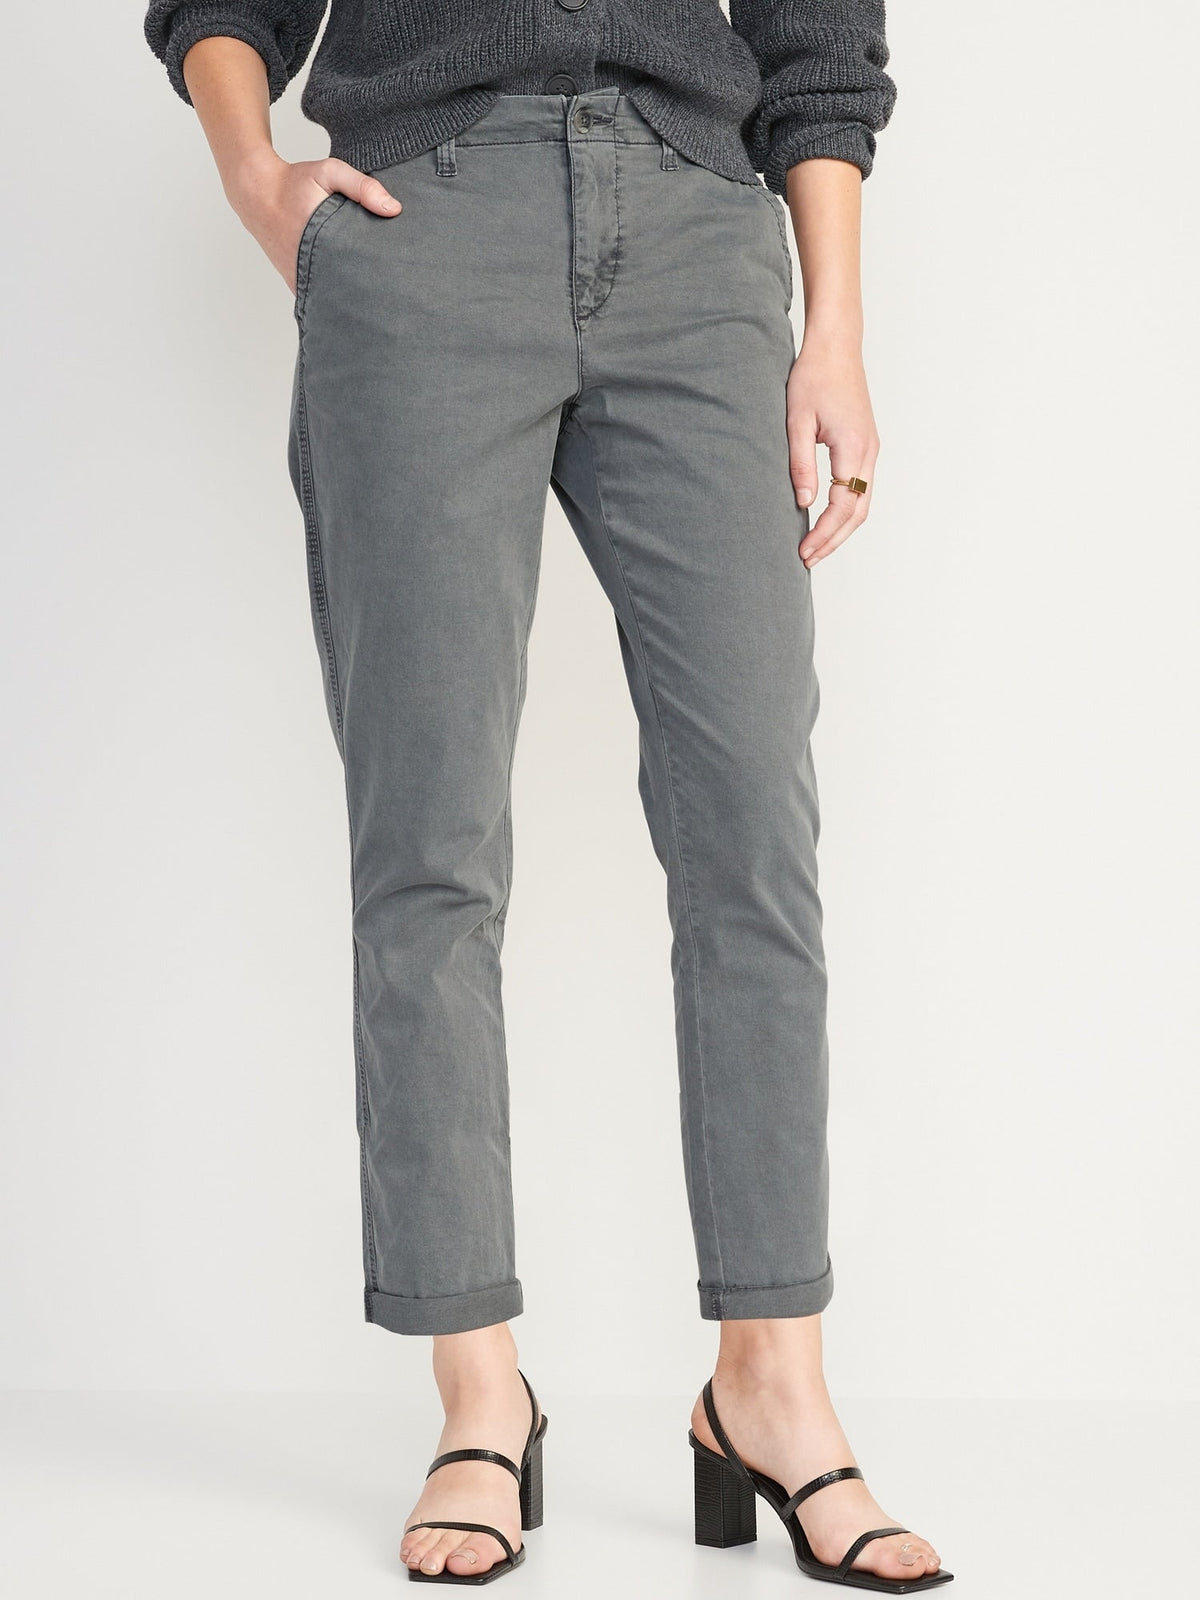 UUE 24Inseam Grey leggings with inner pockets for women, leggings